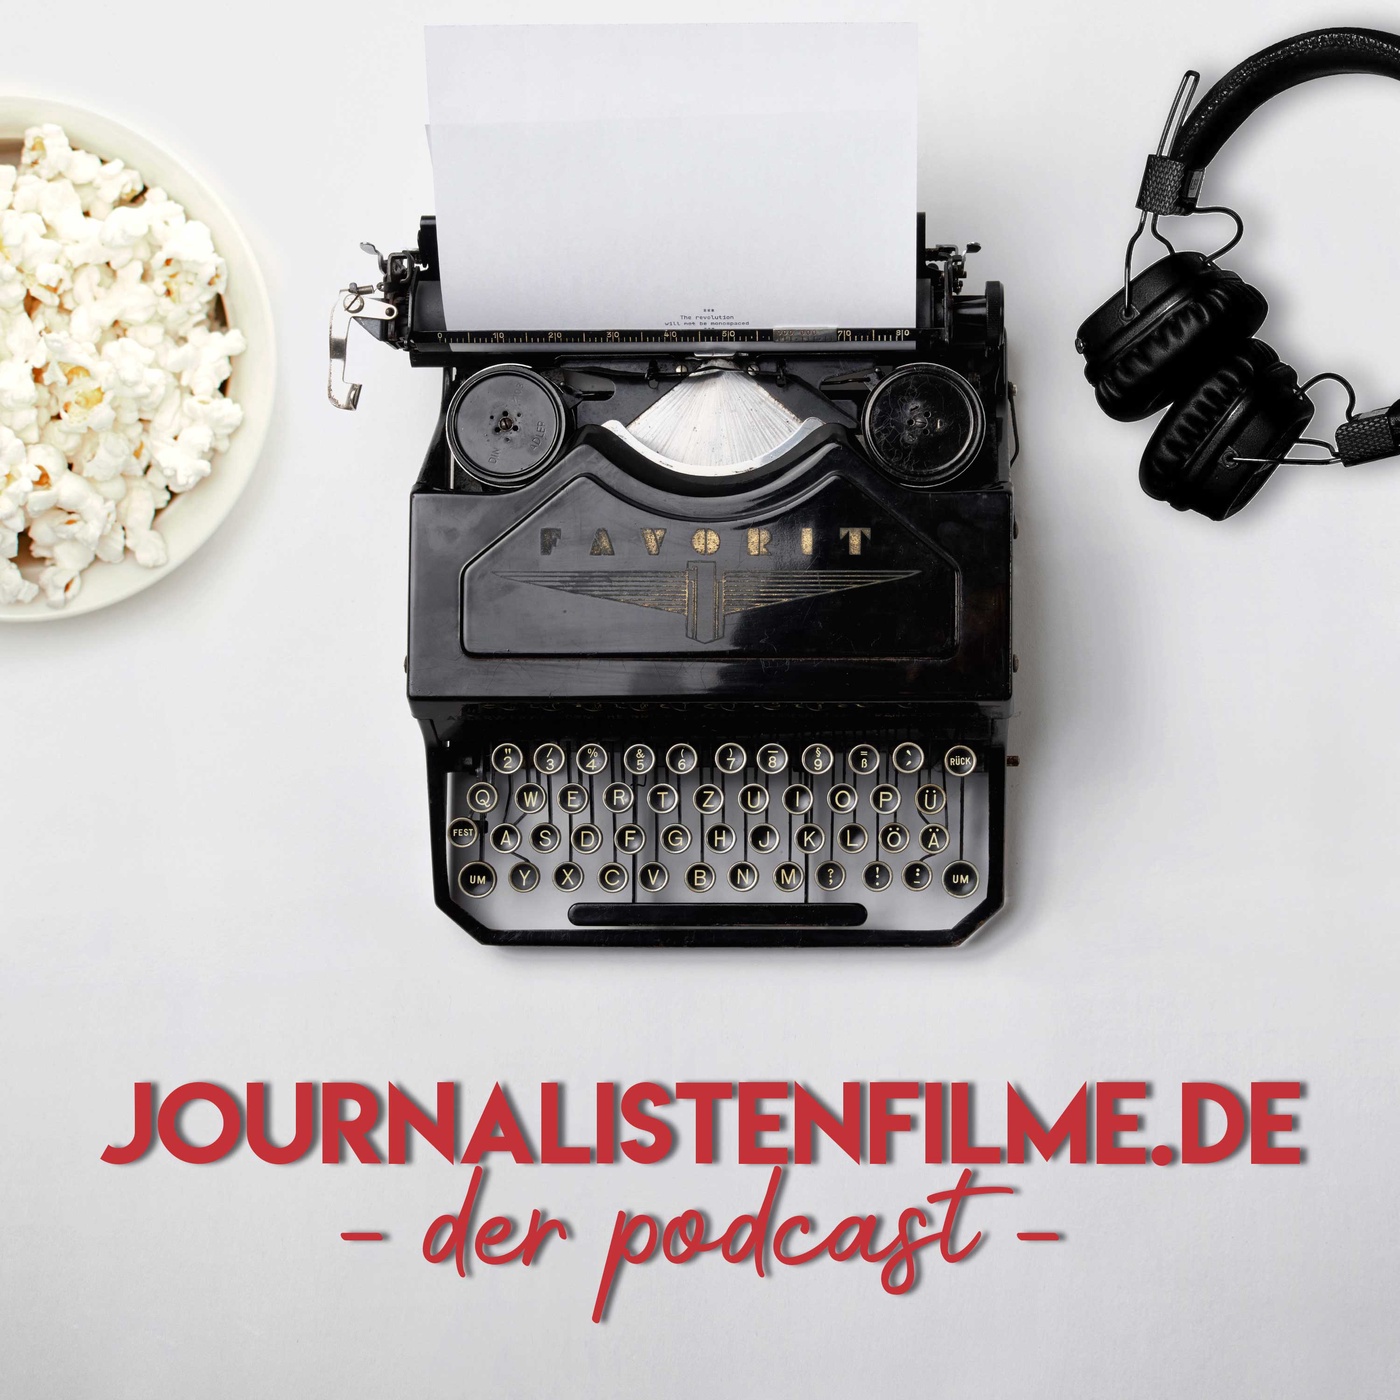 journalistenfilme.de – der Podcast #13: Tim und Struppi feat. Mühlenhof-Podcast